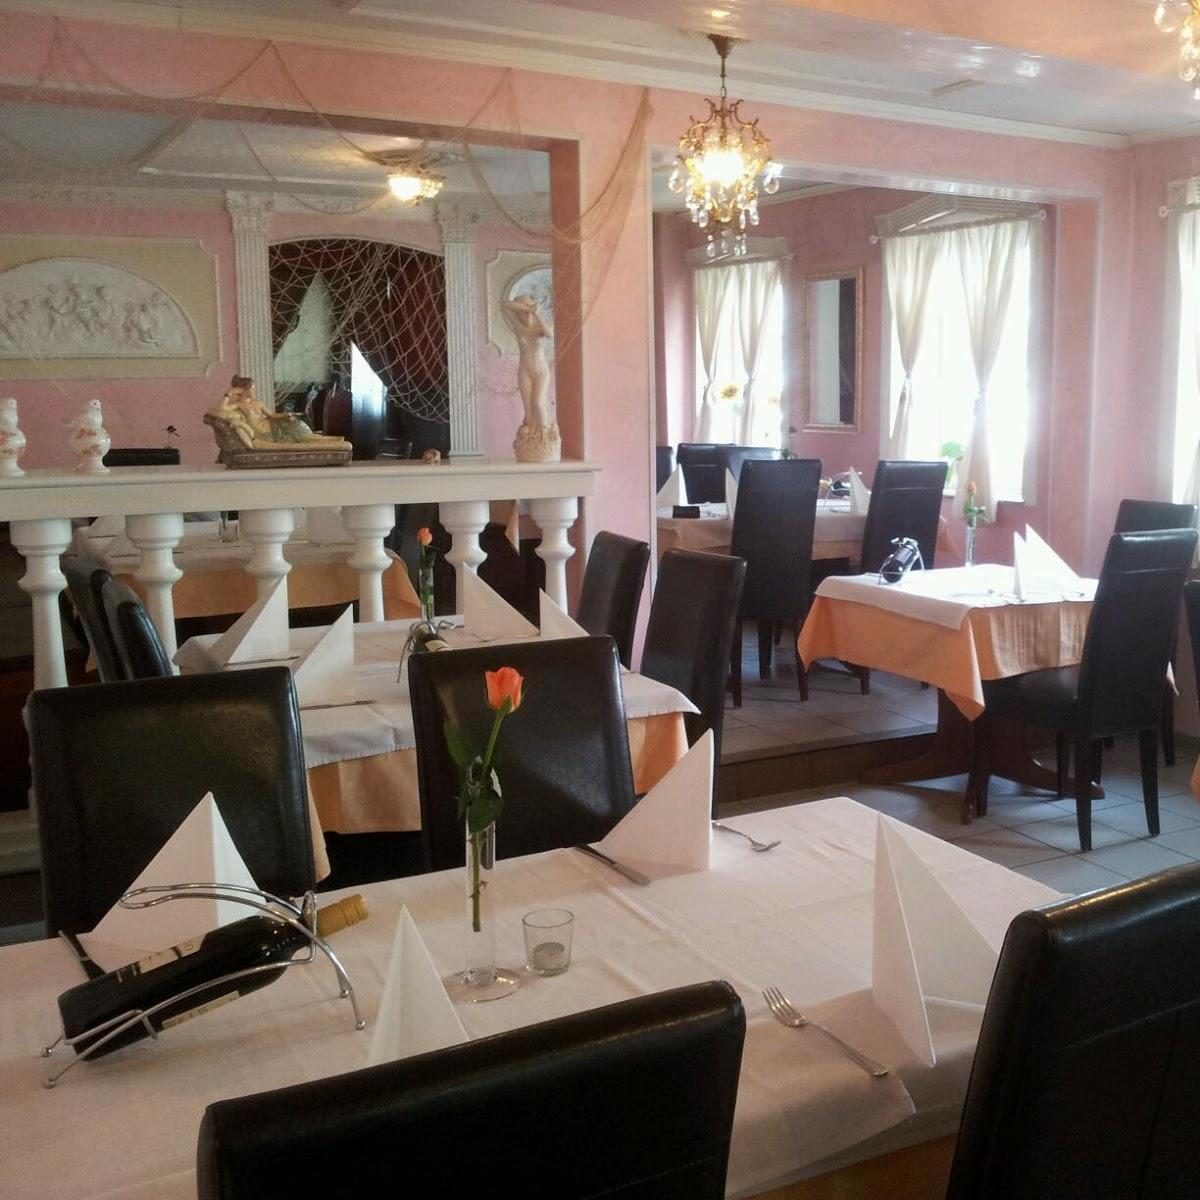 Restaurant "Ristorante uno più uno da Vito" in Pleidelsheim